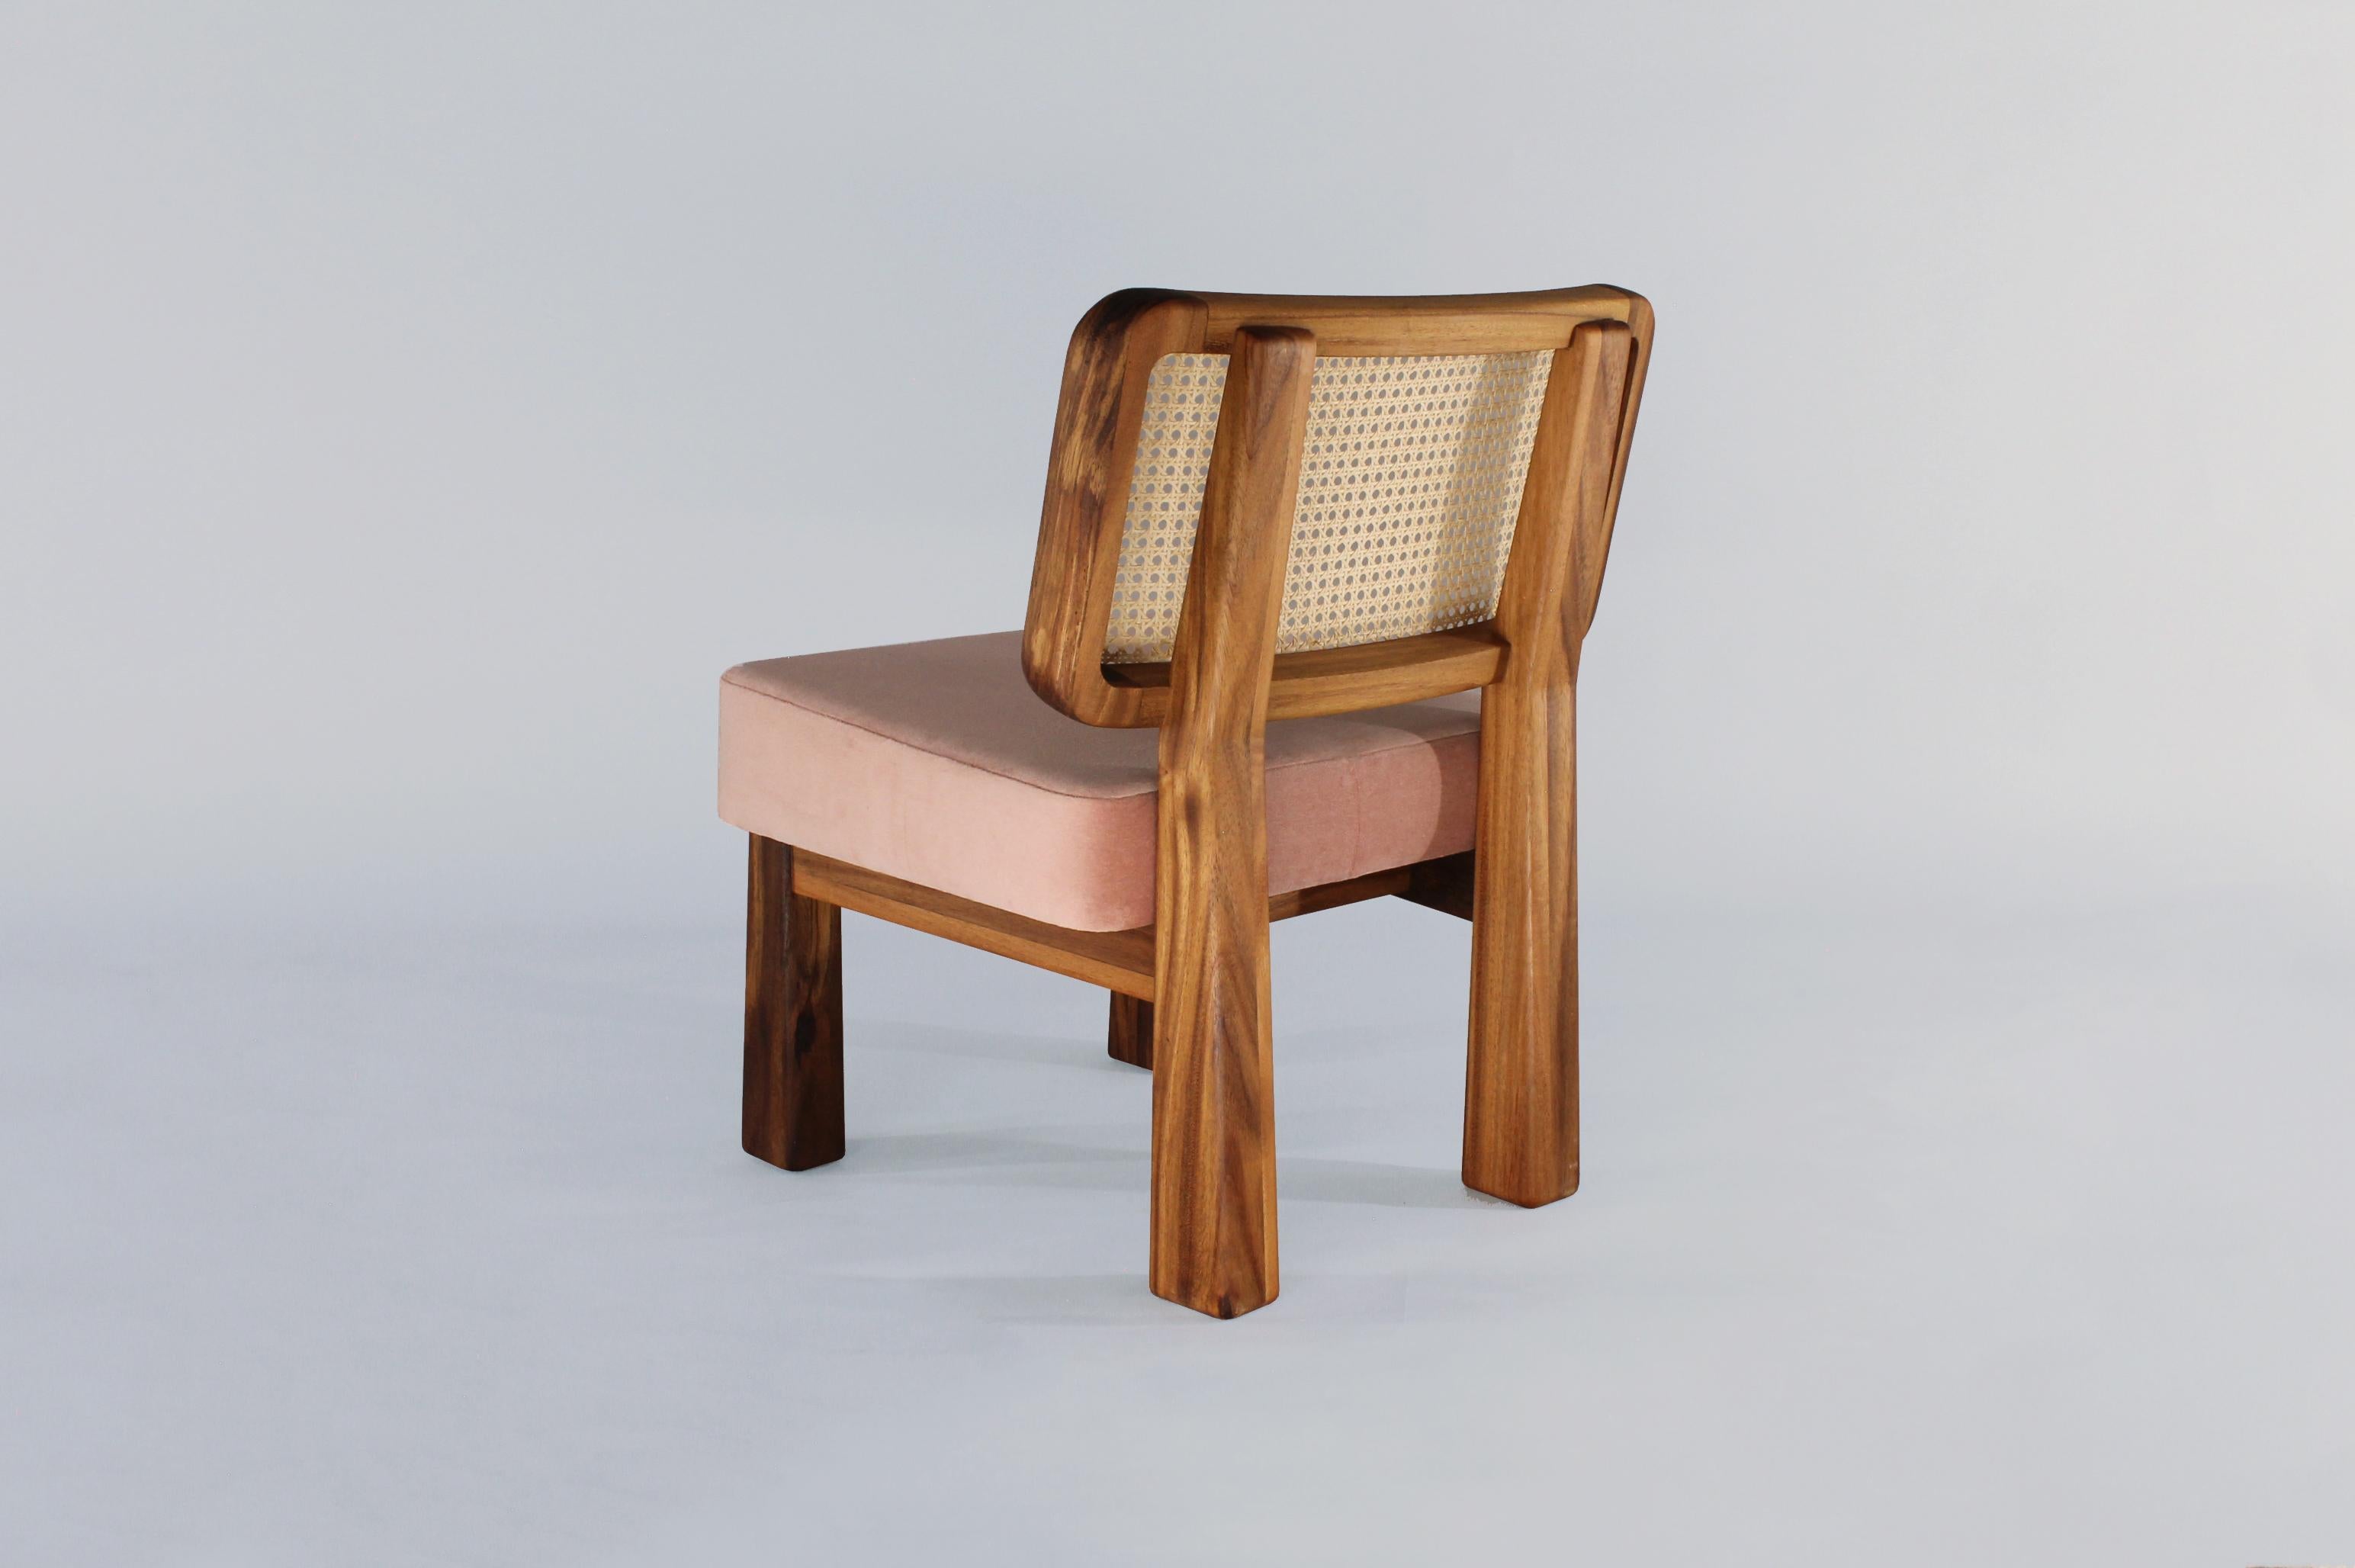 Colima Low Chair Massivholz und Geflechtrücken:: zeitgenössisches mexikanisches Design (Mexikanisch)